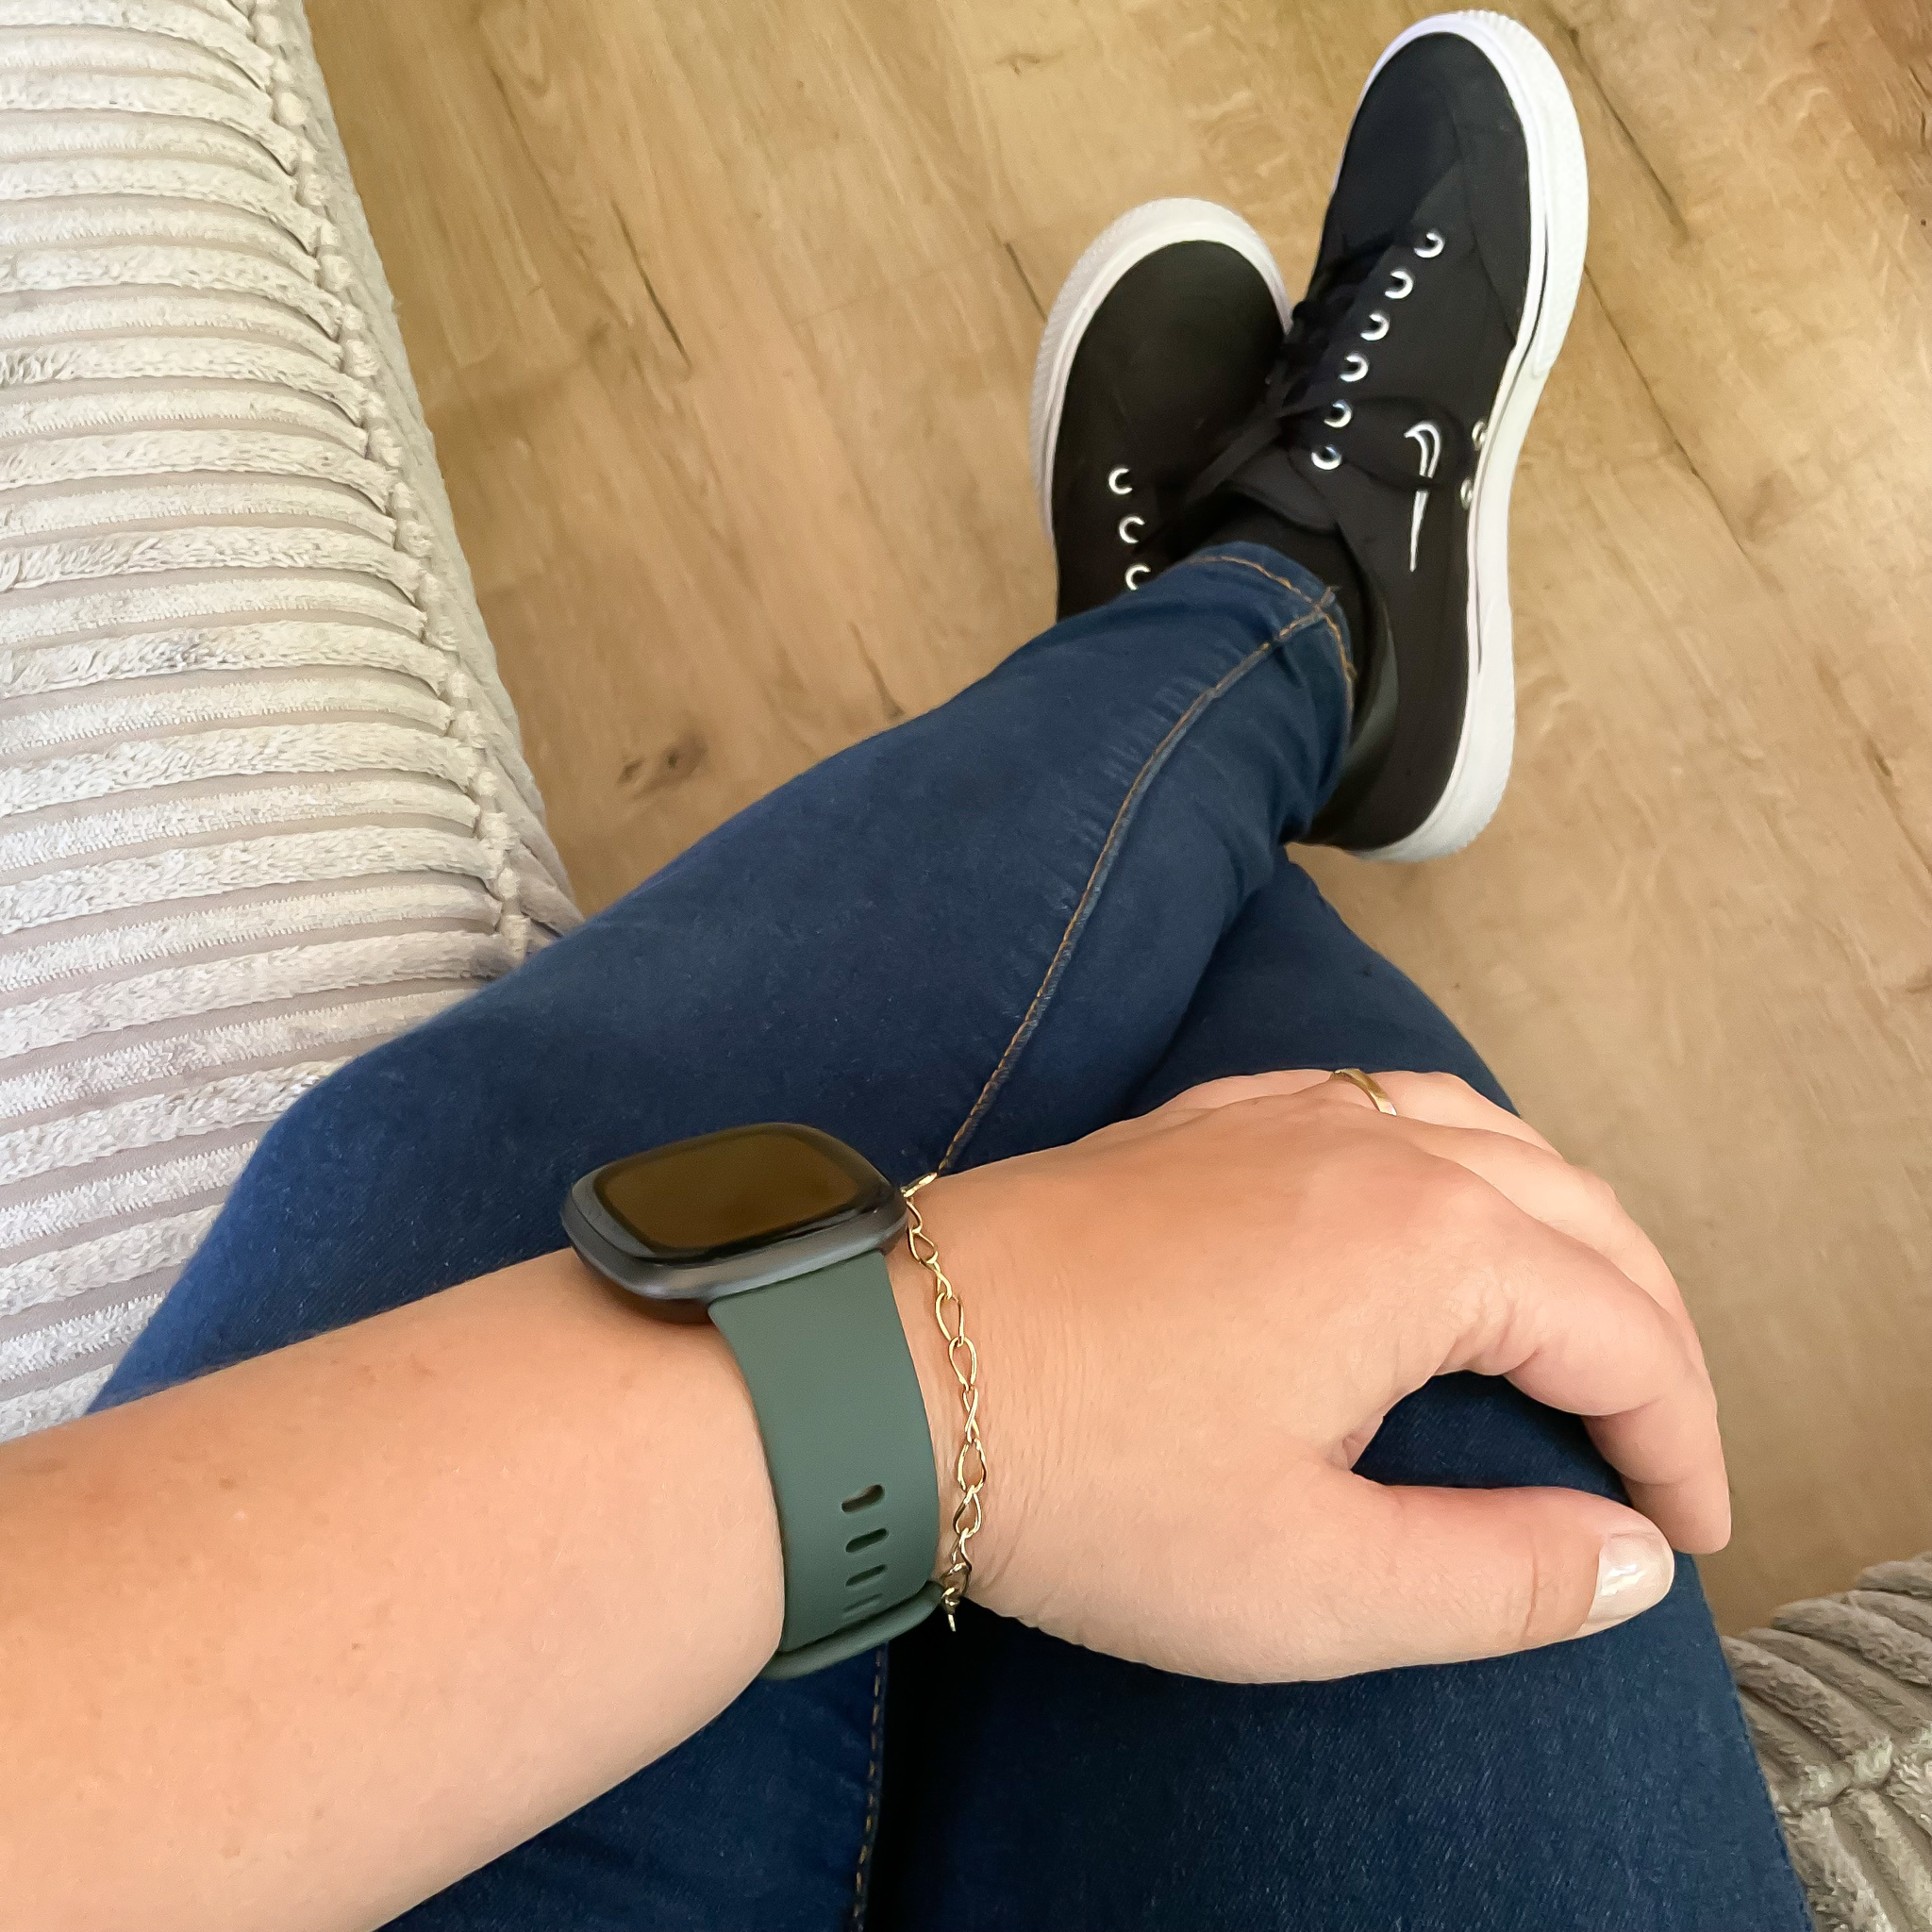 Fitbit Versa 3 / Sense sport band - groen